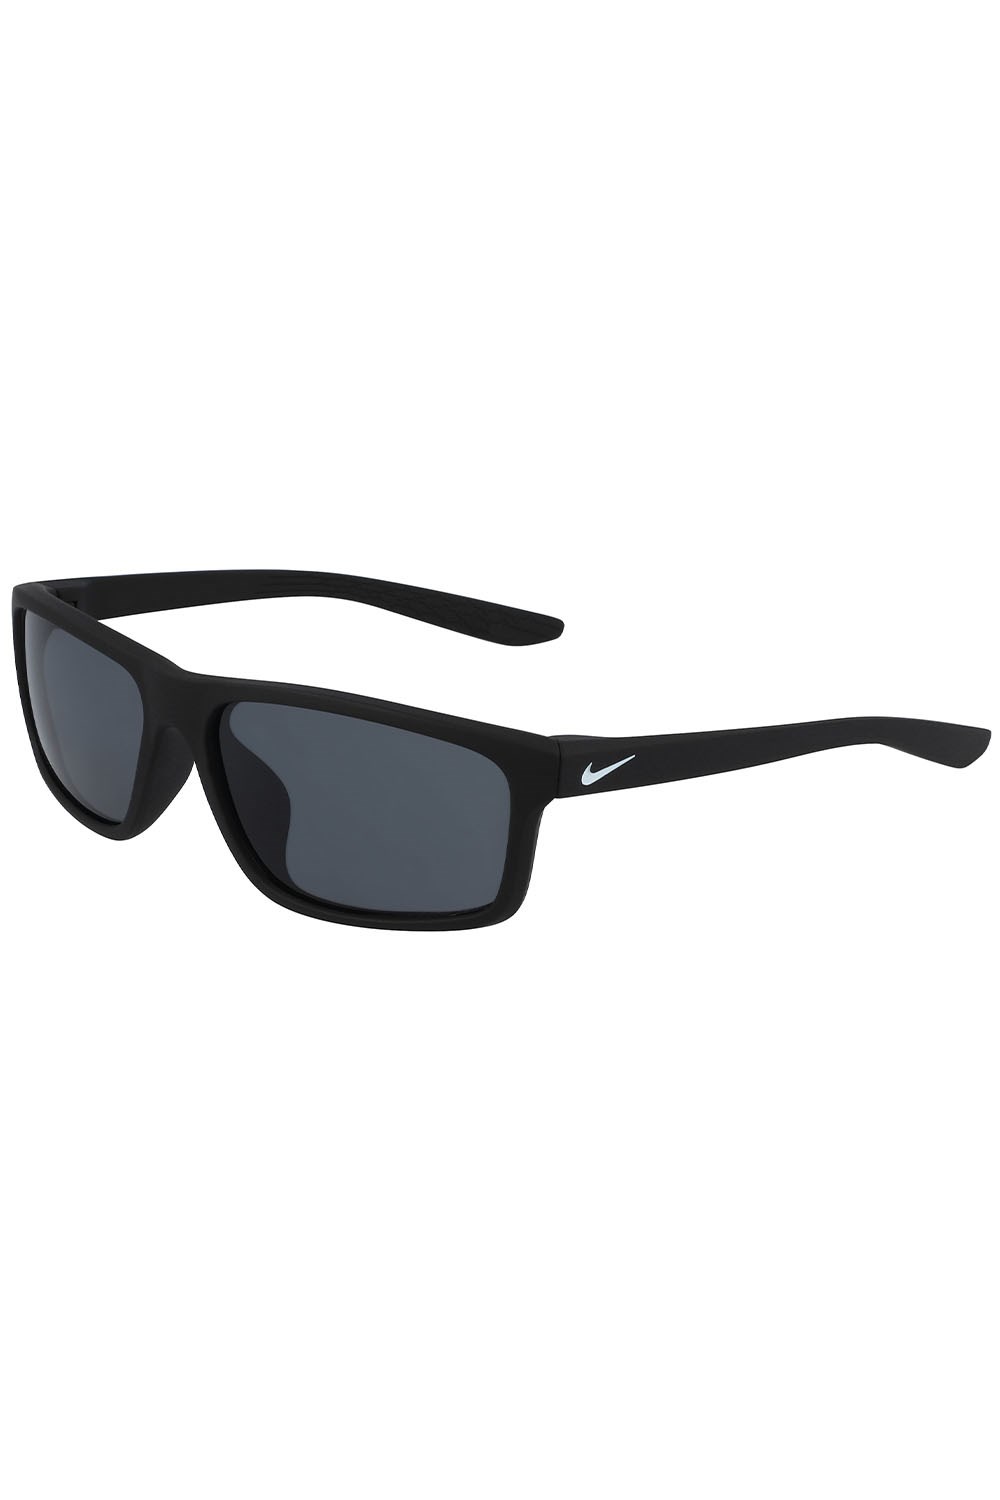 Chronicle Unisex Sunglasses -